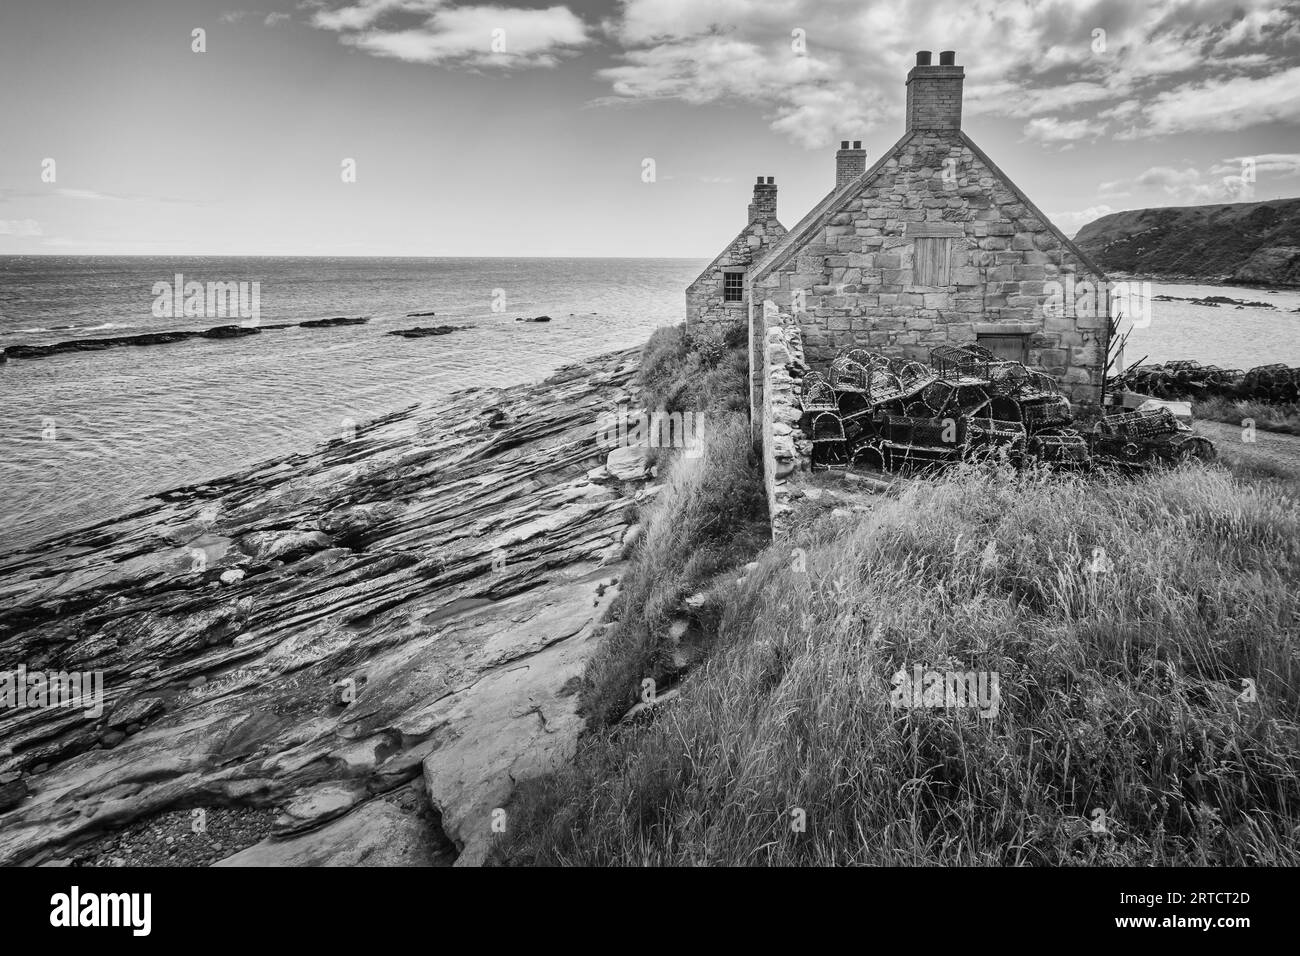 Vue d'une maison de pêcheur sur la côte, East Lothian, Écosse, Royaume-Uni Banque D'Images